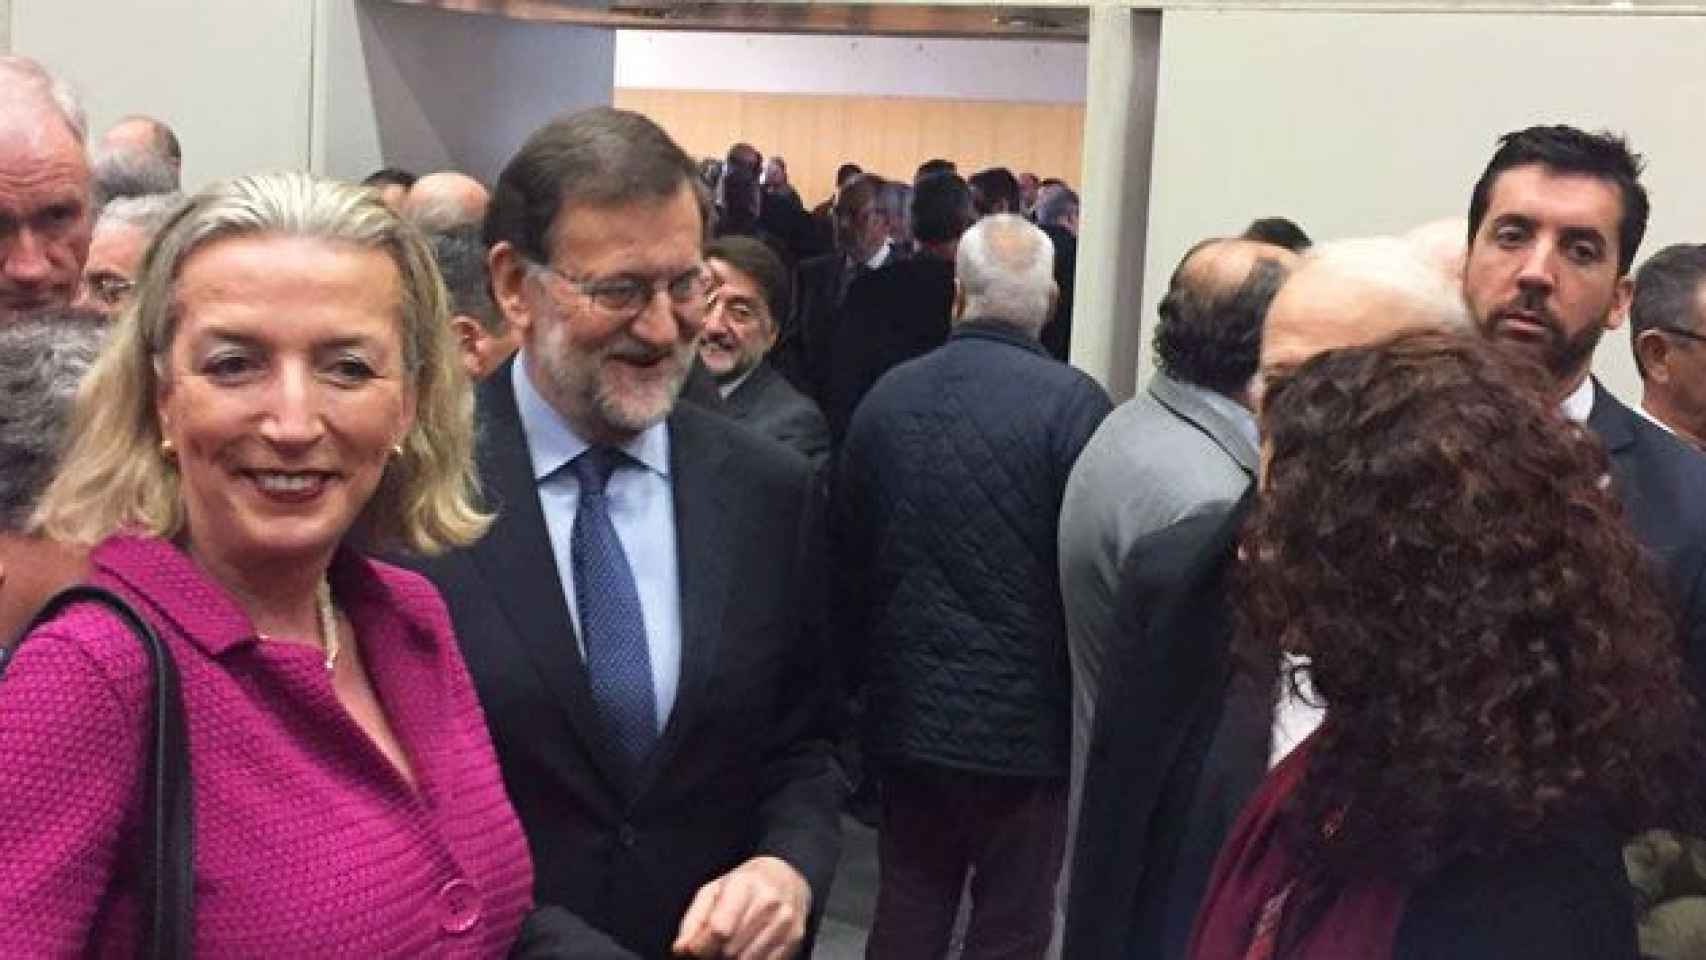 Brigitte Verkinderen, directora general de la Cámara de Comercio Belgo-Luxemburguesa en Barcelona, junto al presidente del Gobierno, Mariano Rajoy, en un acto anterior: Antes de pisar Bélgica, conviene mirar sus leyes / CG